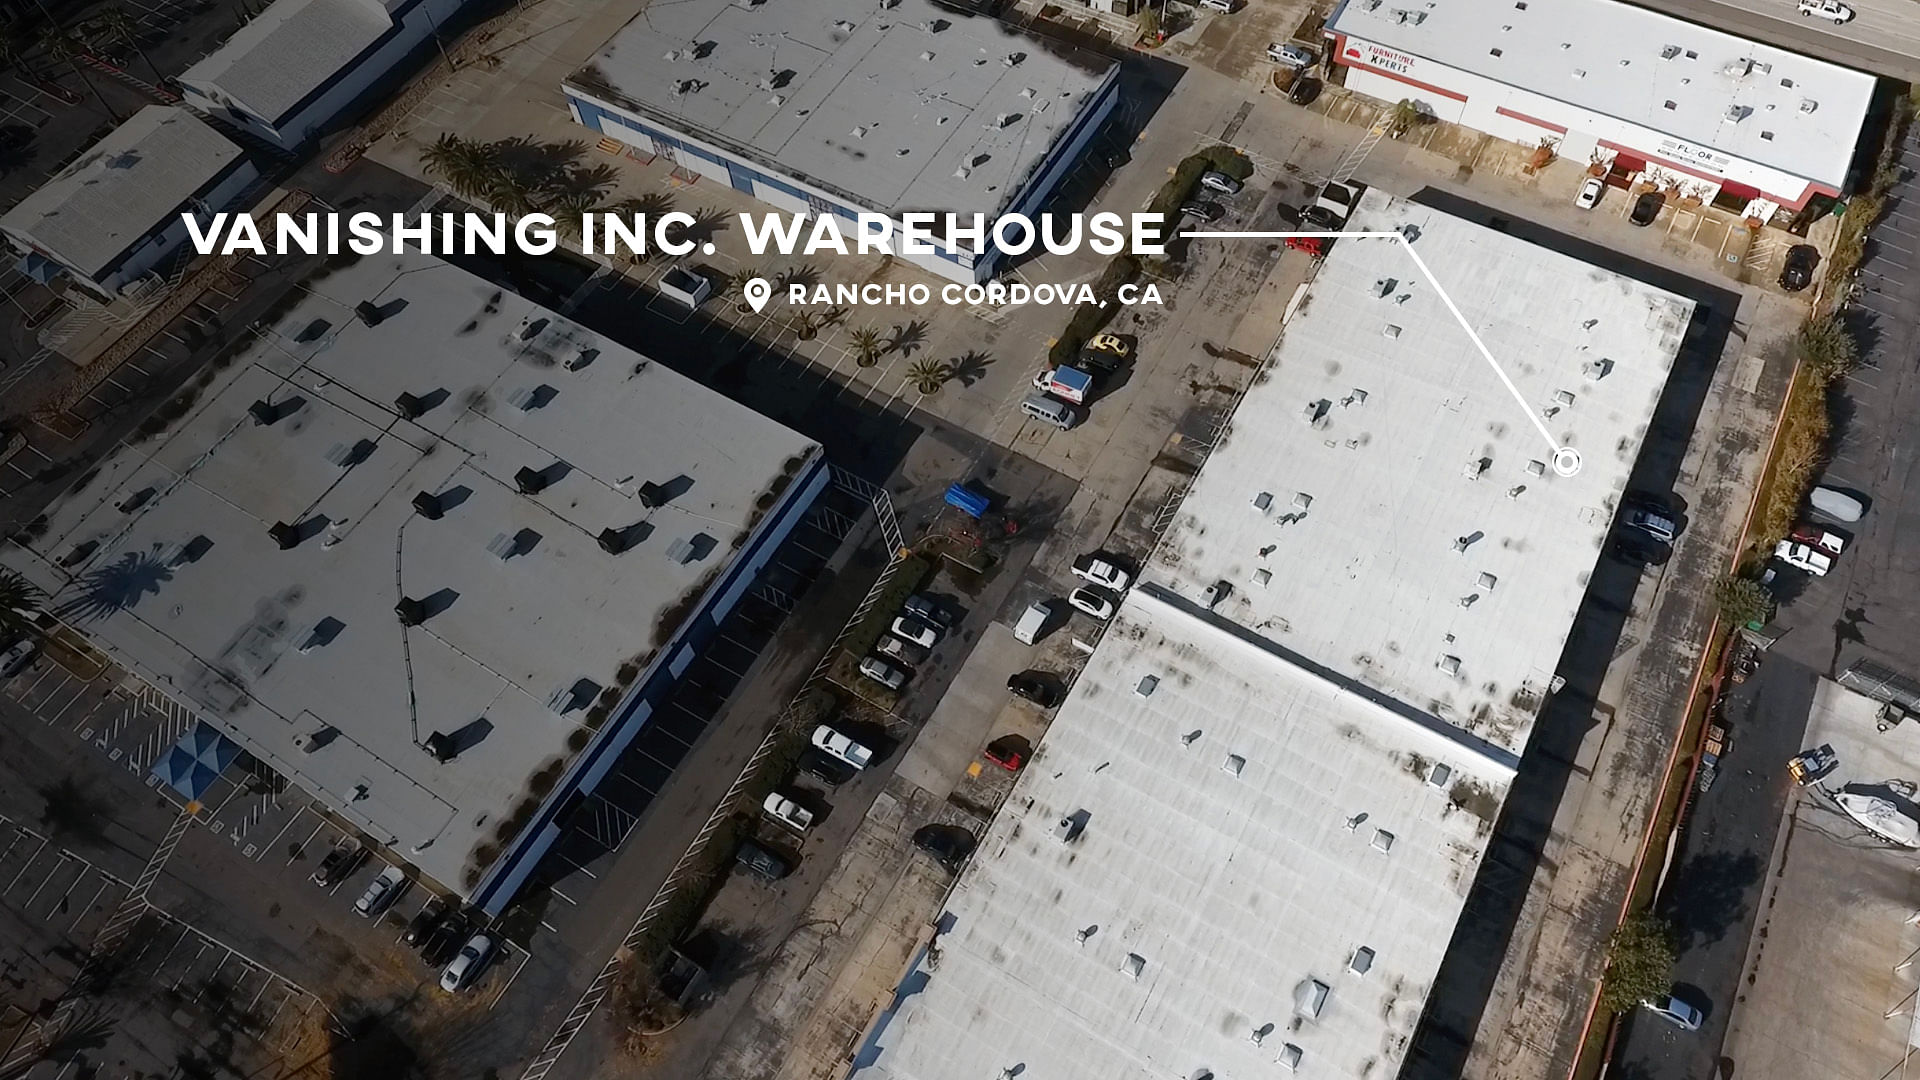 Vanishing Inc. Warehouse